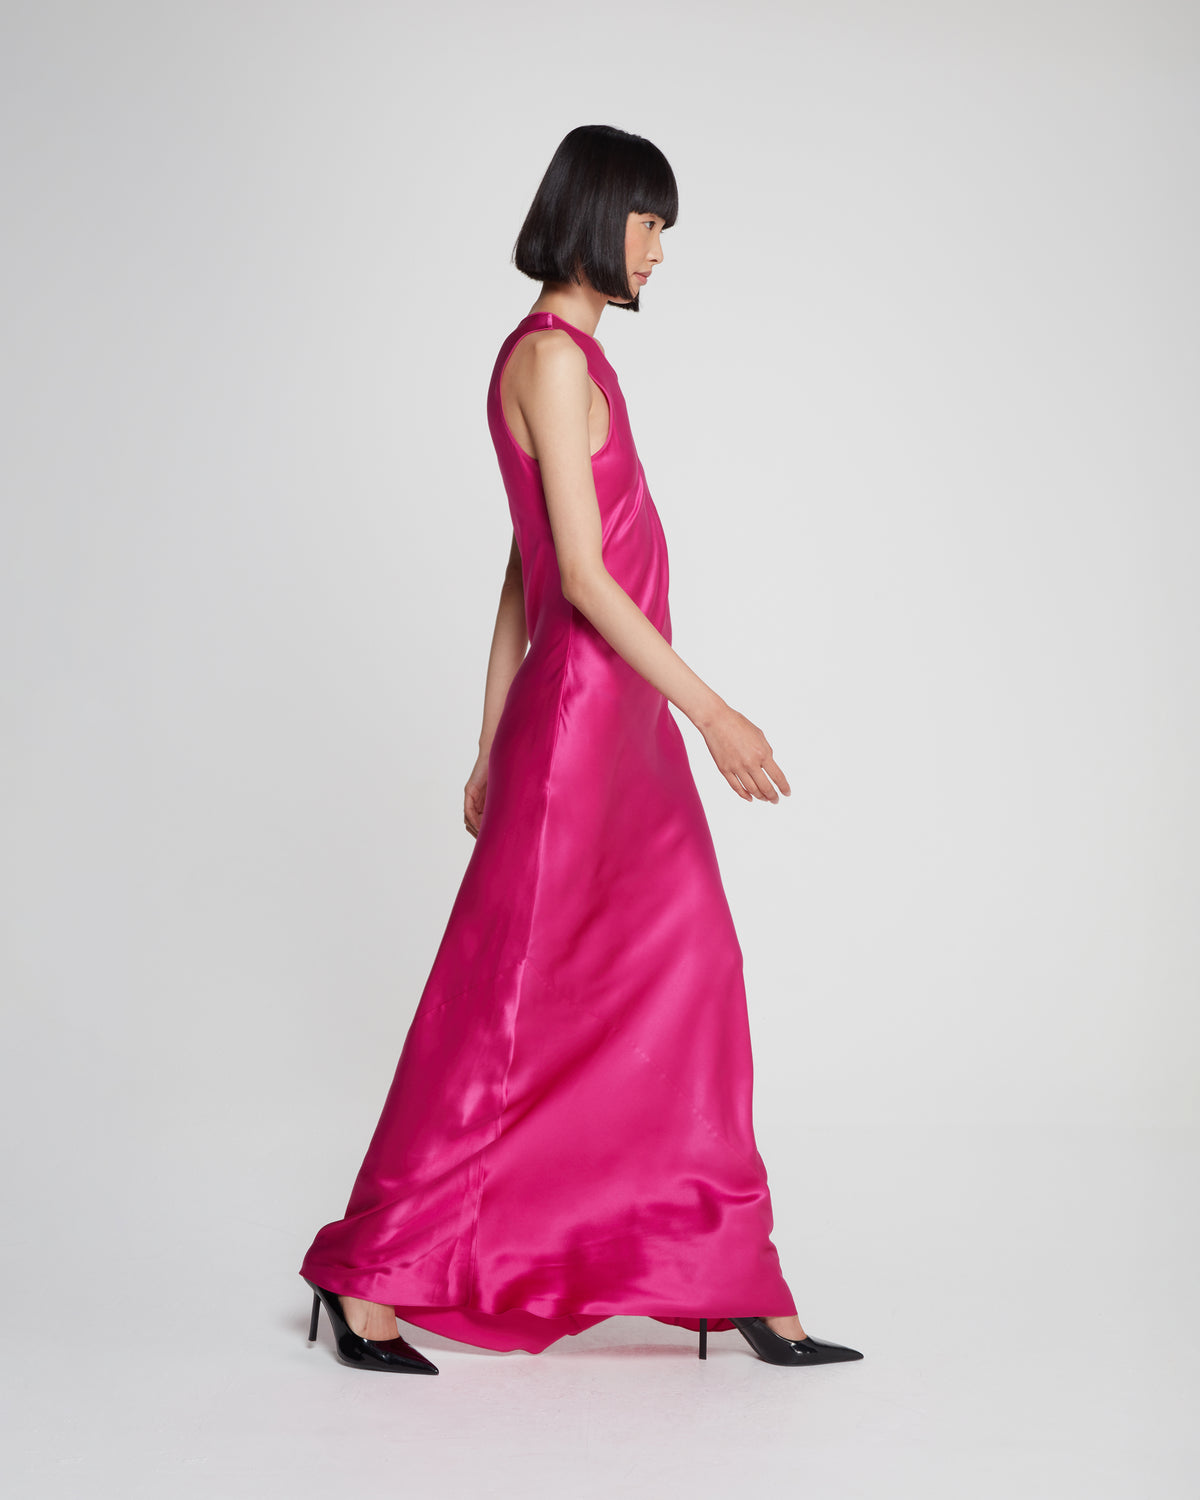 Silk Tank Dress - Raspberry Pink SERENA BUTE